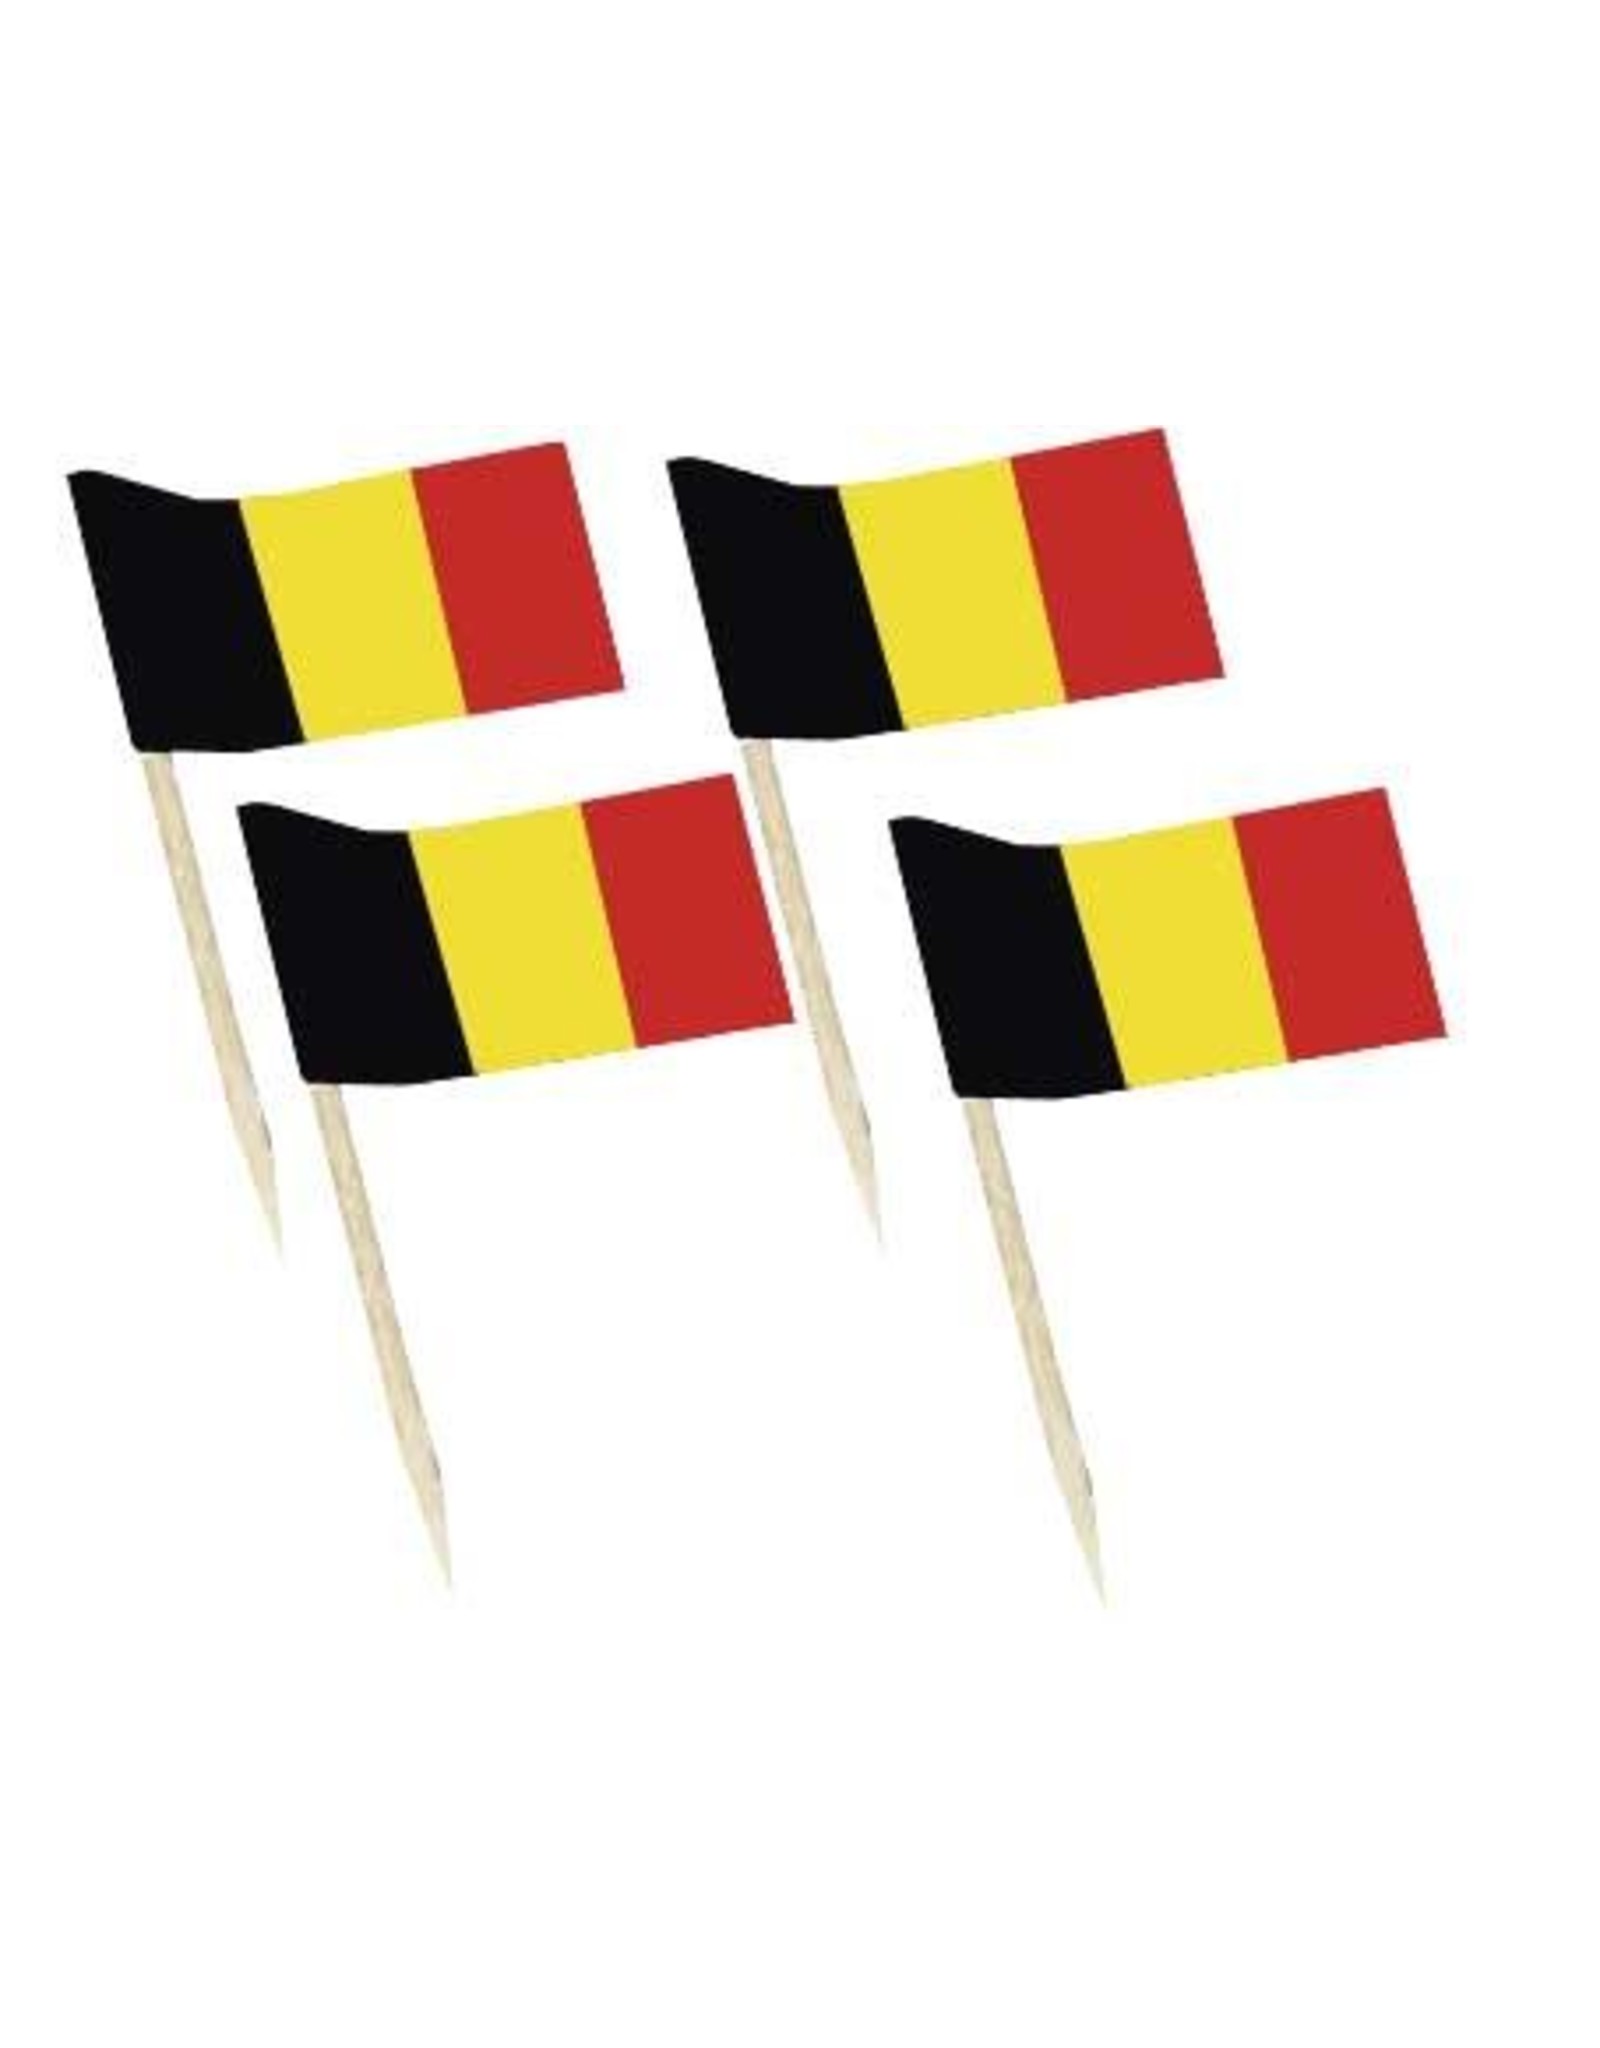 Vlaggetjes Zwart/Geel/Rood (7 cm, 50 stuks)